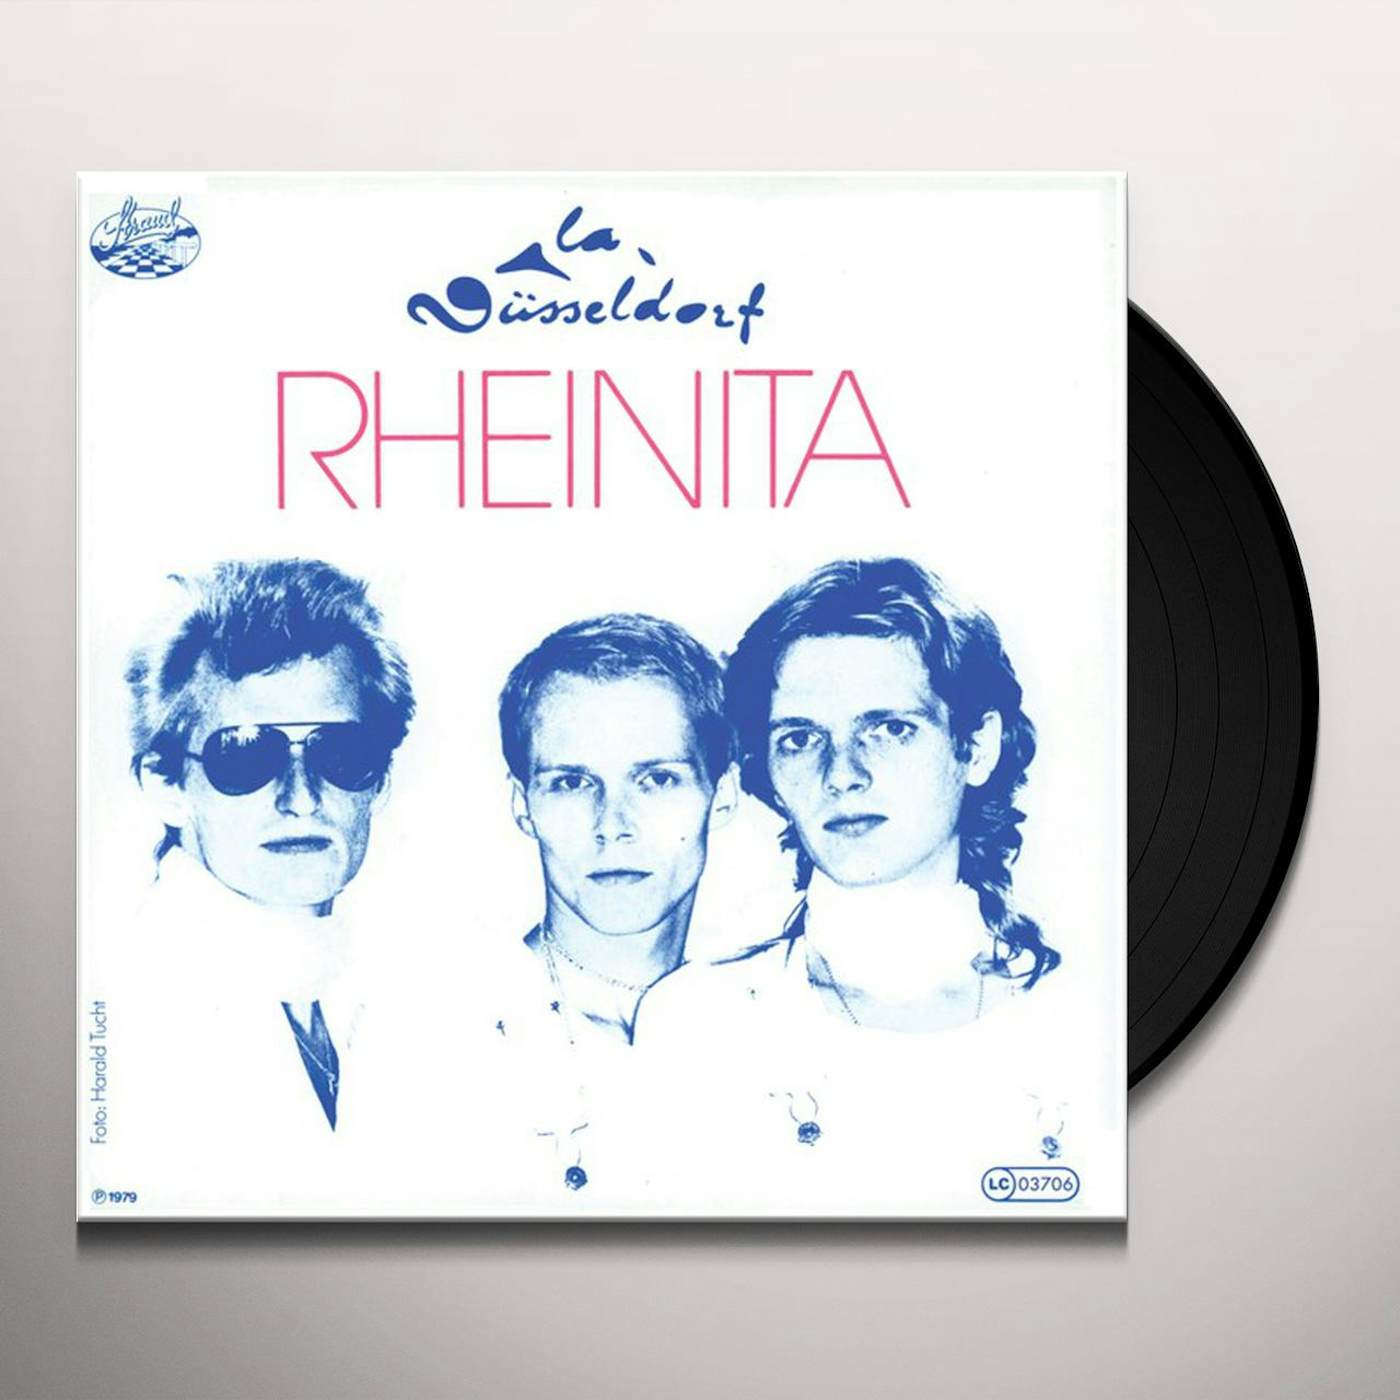 La Düsseldorf Rheinita/Viva Vinyl Record